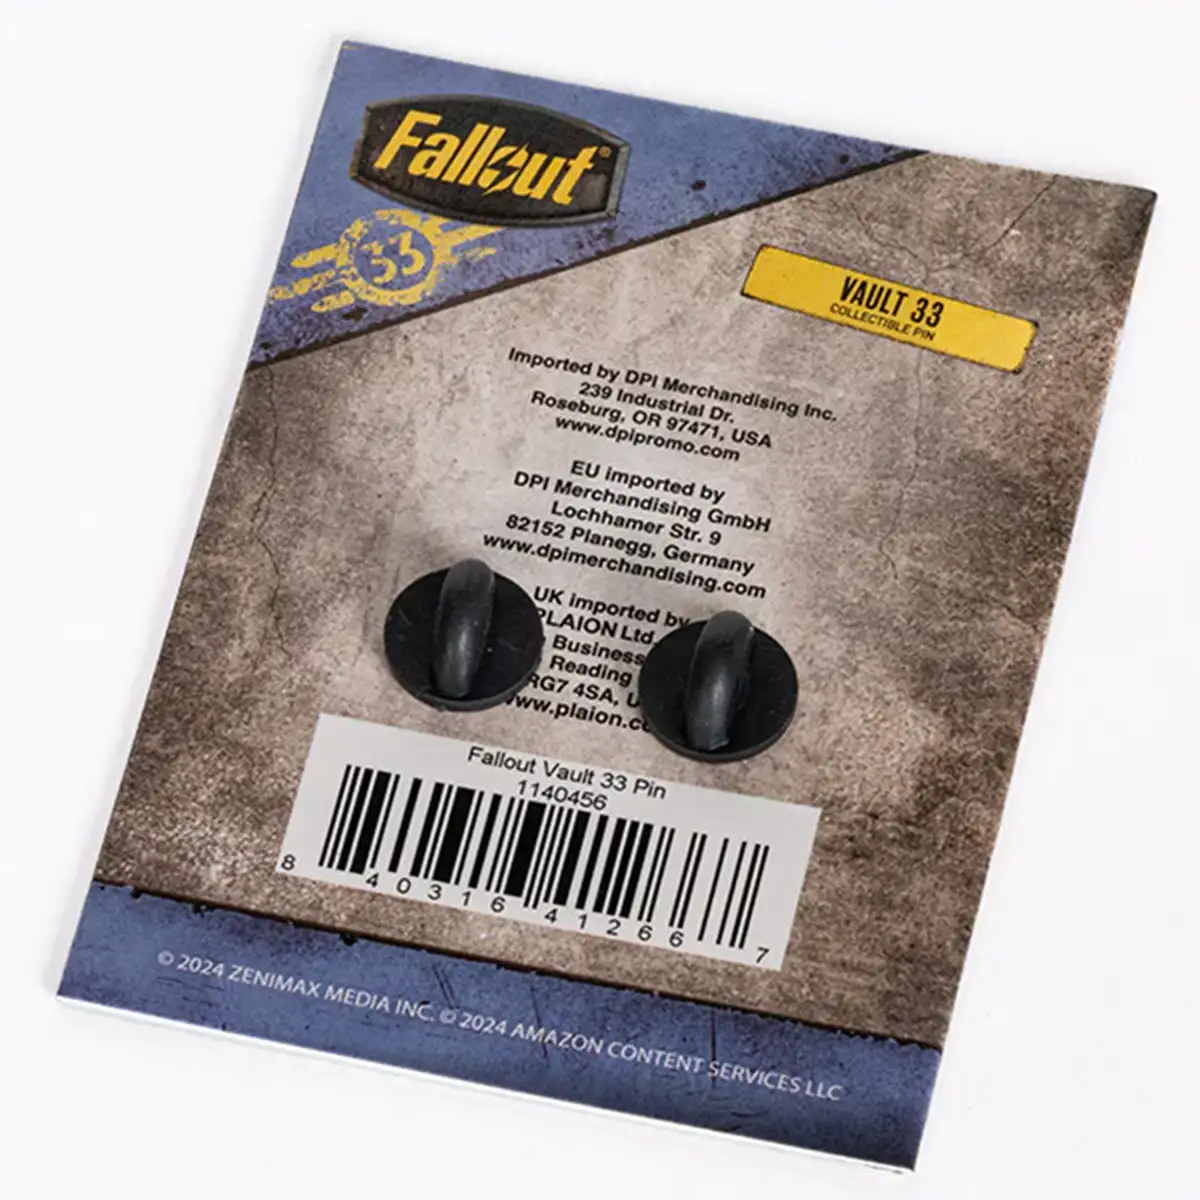 Fallout Pin "Vault 33" Image 4